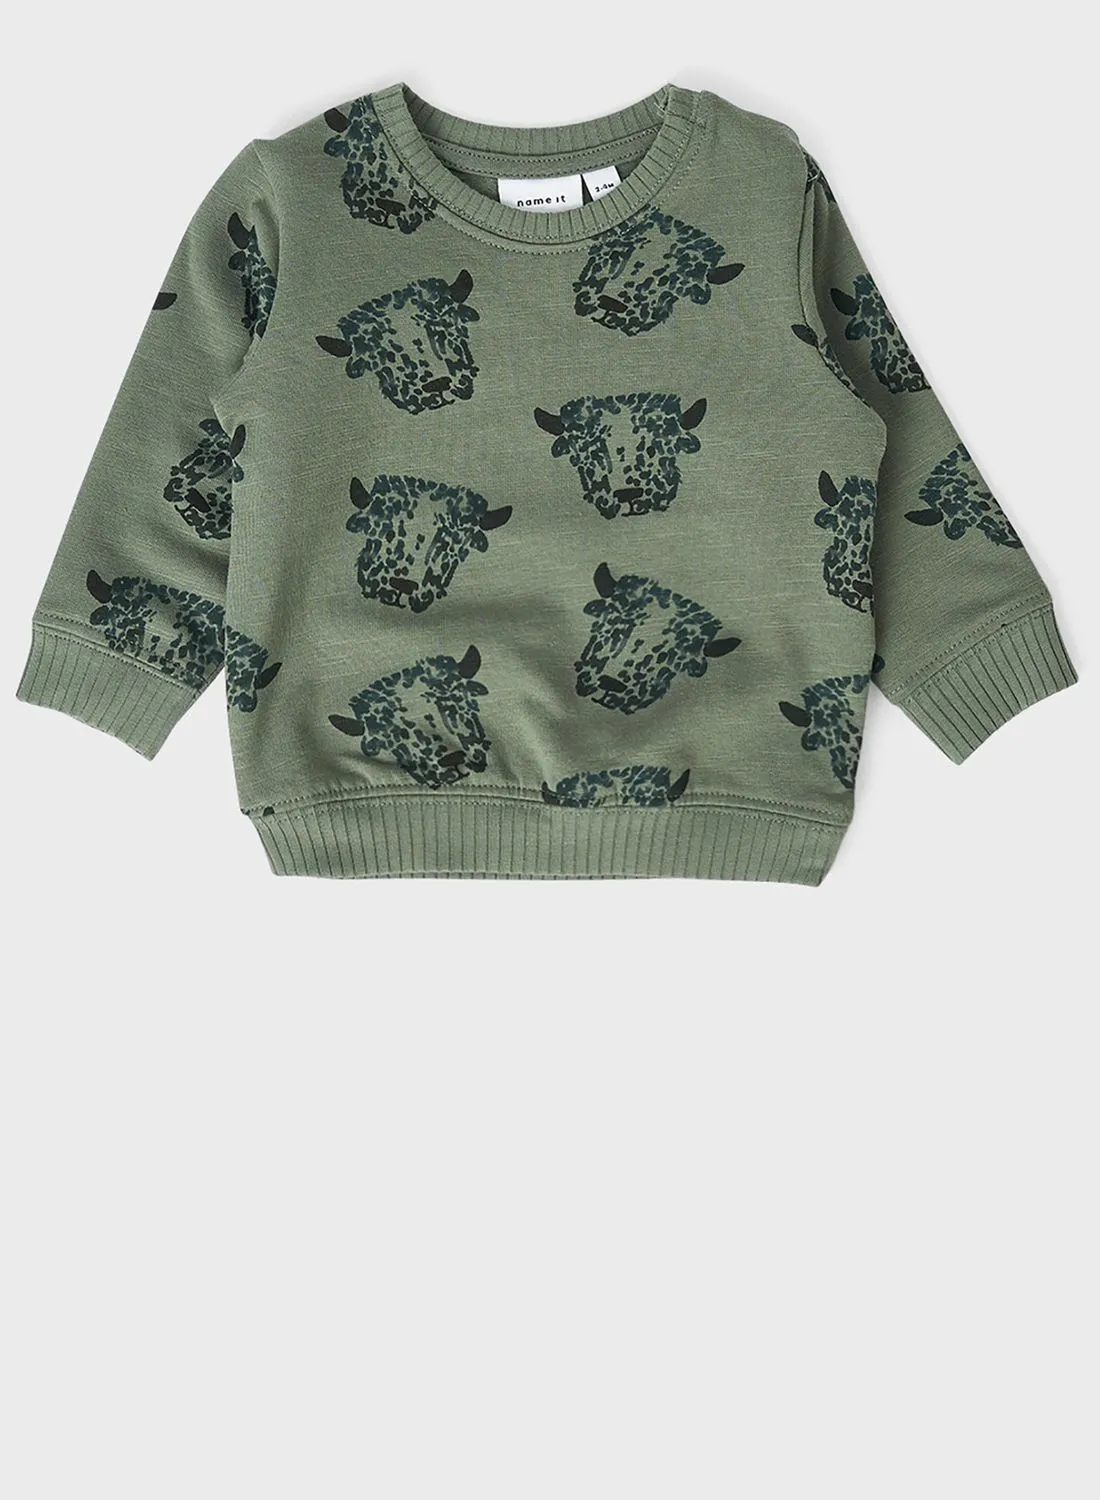 NAME IT Infant Animal Print Sweatshirt